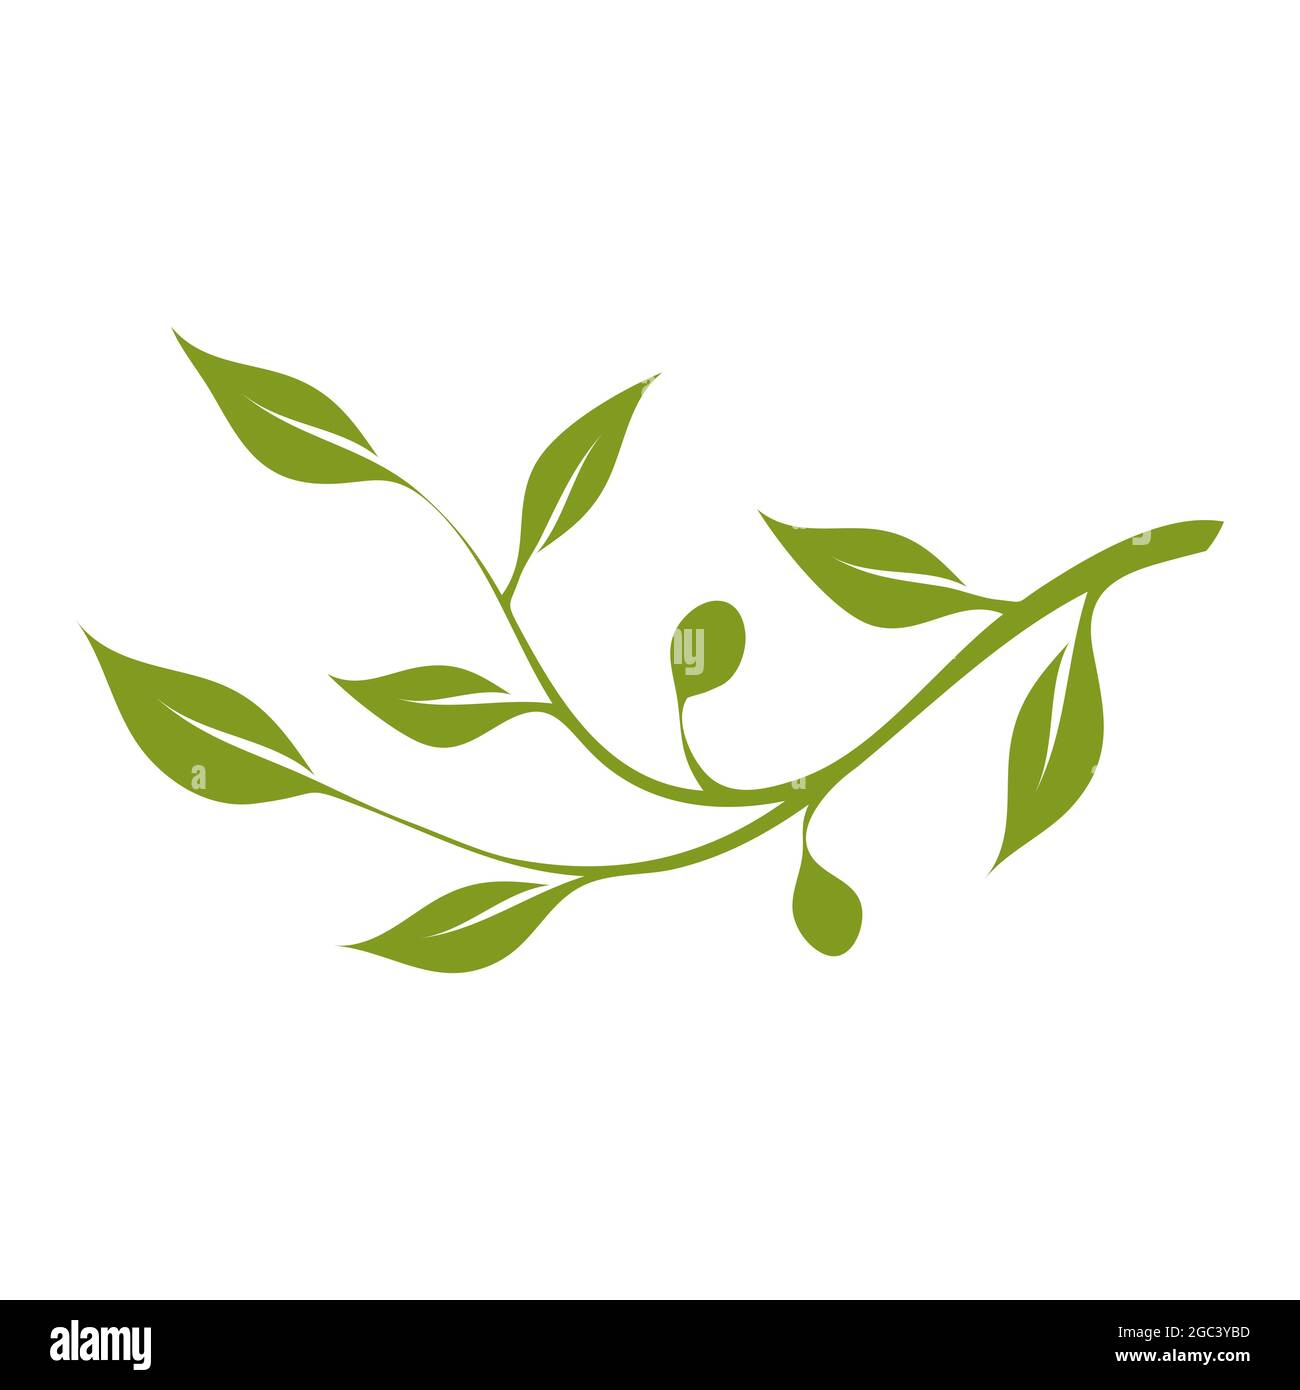 Rametto di olive verdi con foglie e olive su sfondo bianco. Spazio di copia per il disegno o il testo. Modello di illustrazione vettoriale Illustrazione Vettoriale